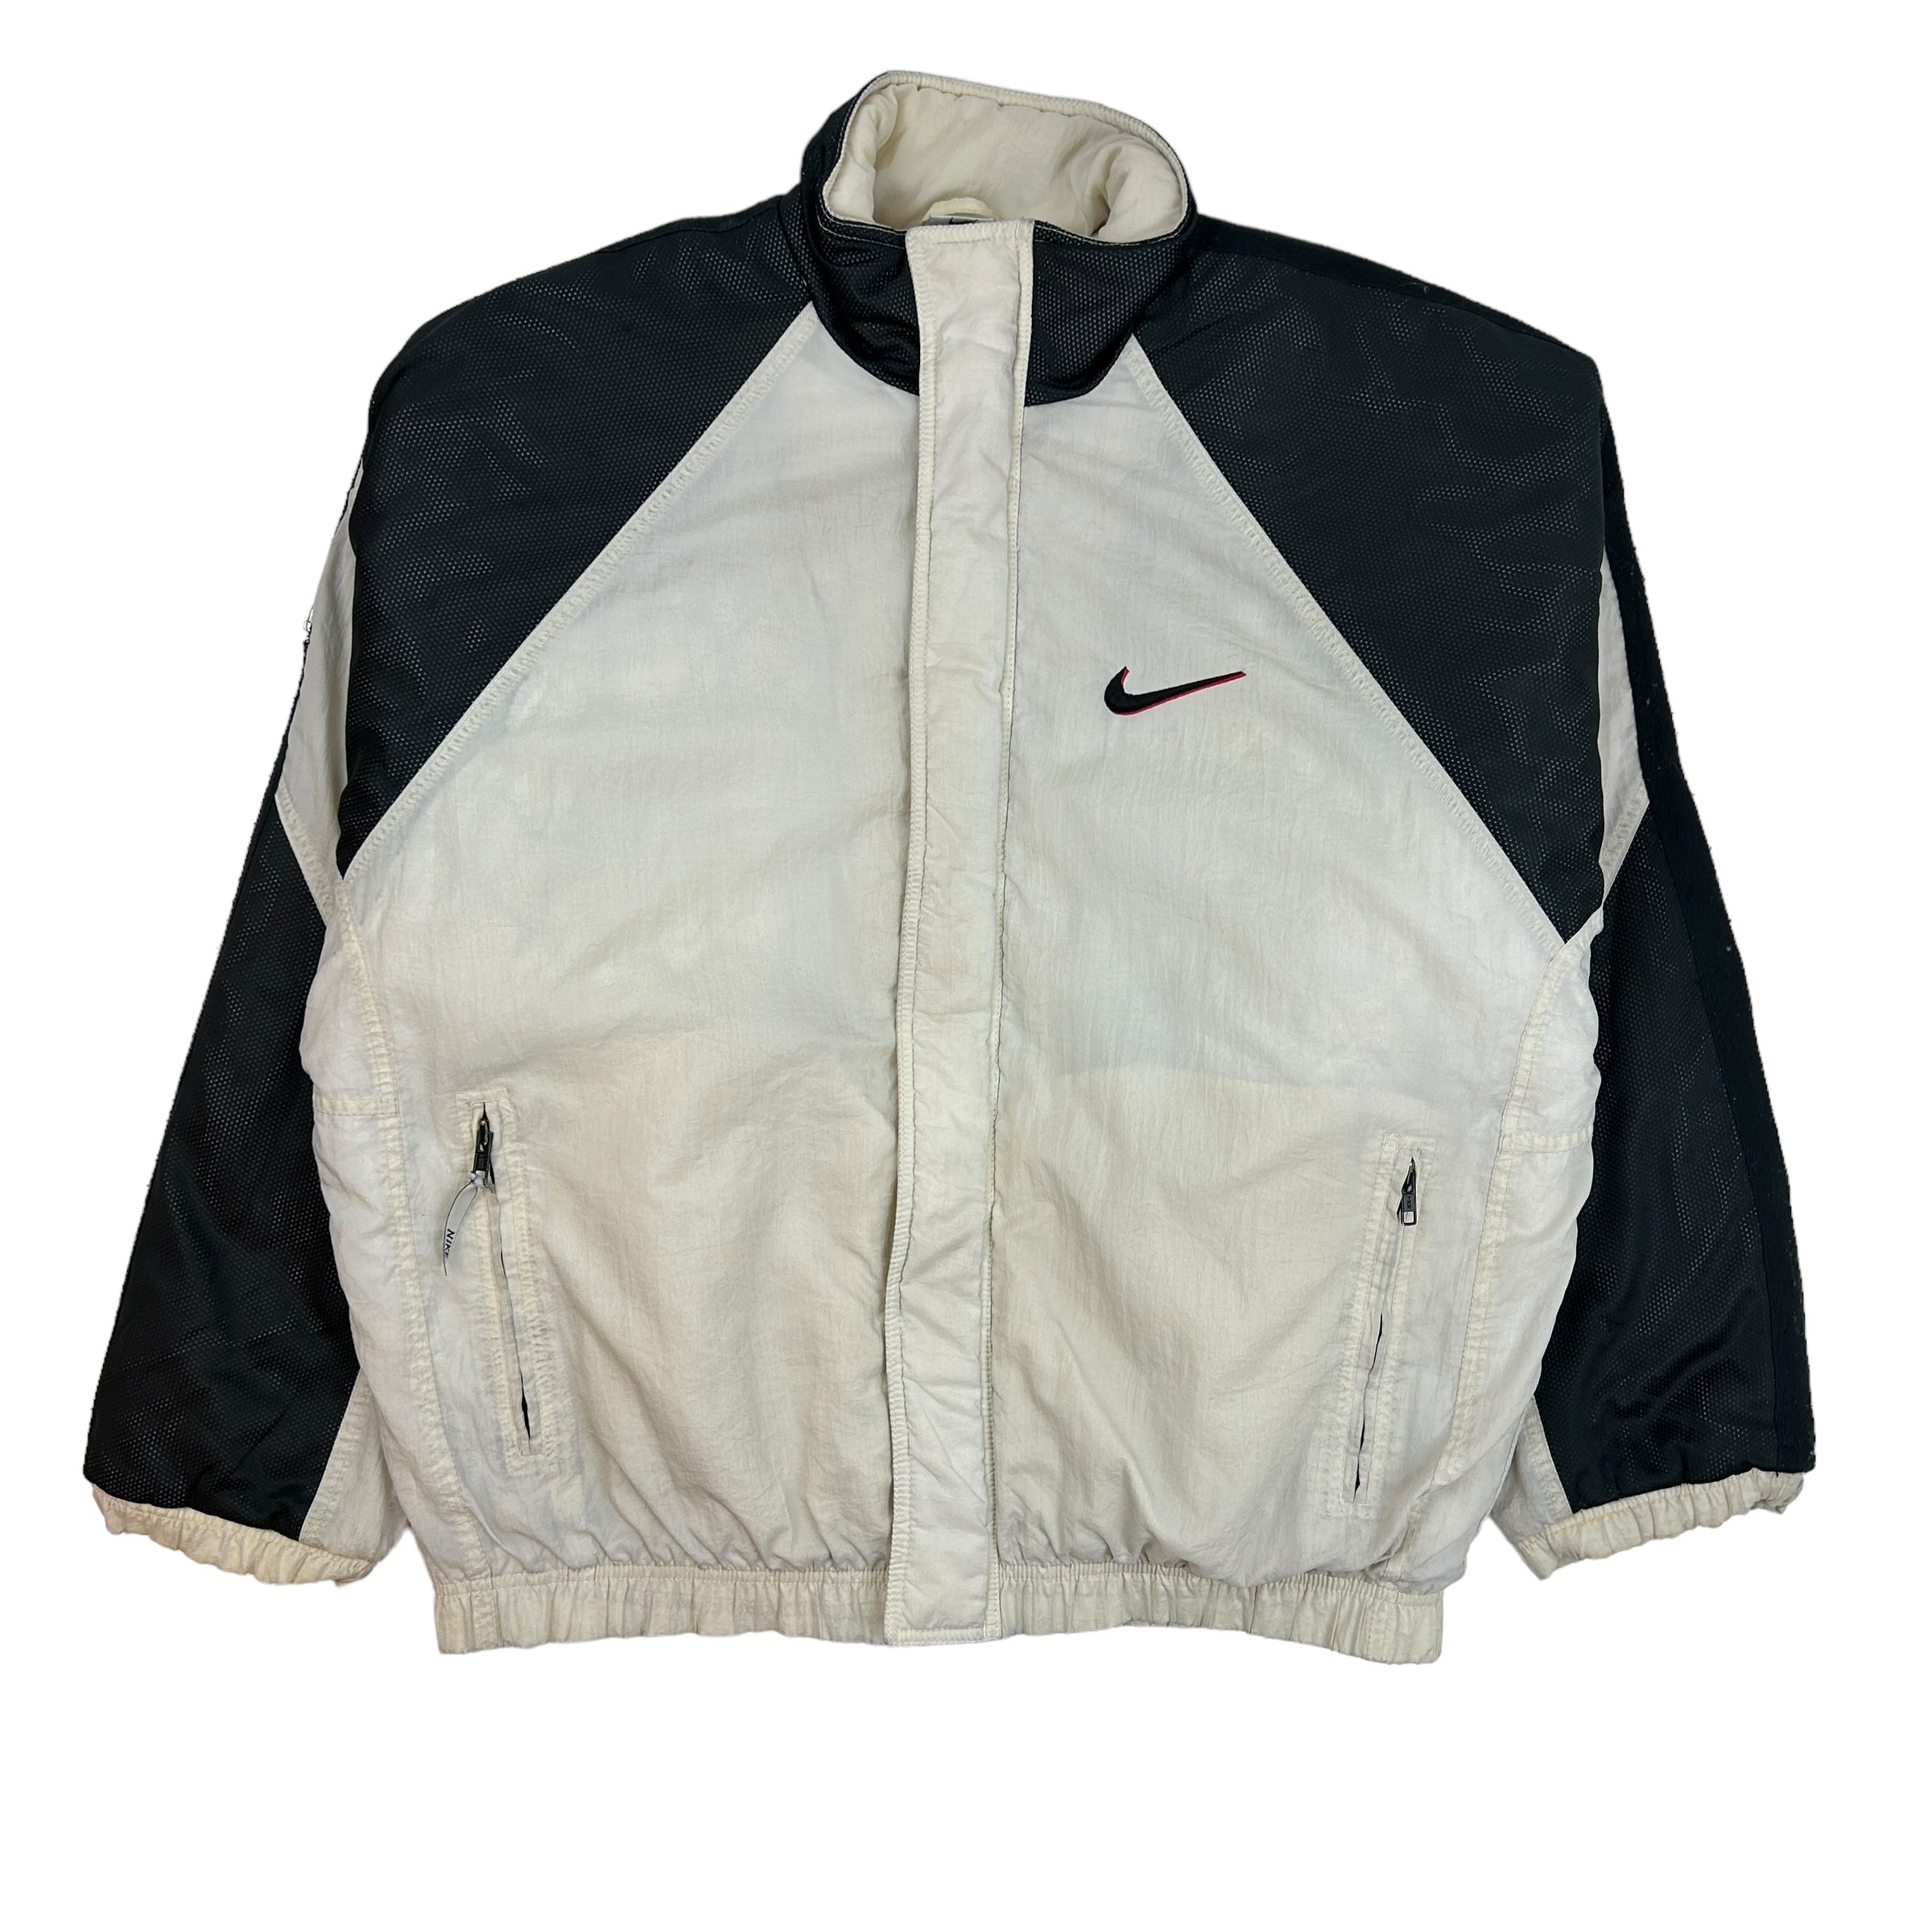 Vintage Nike Swoosh Bomber Jacket White/Black